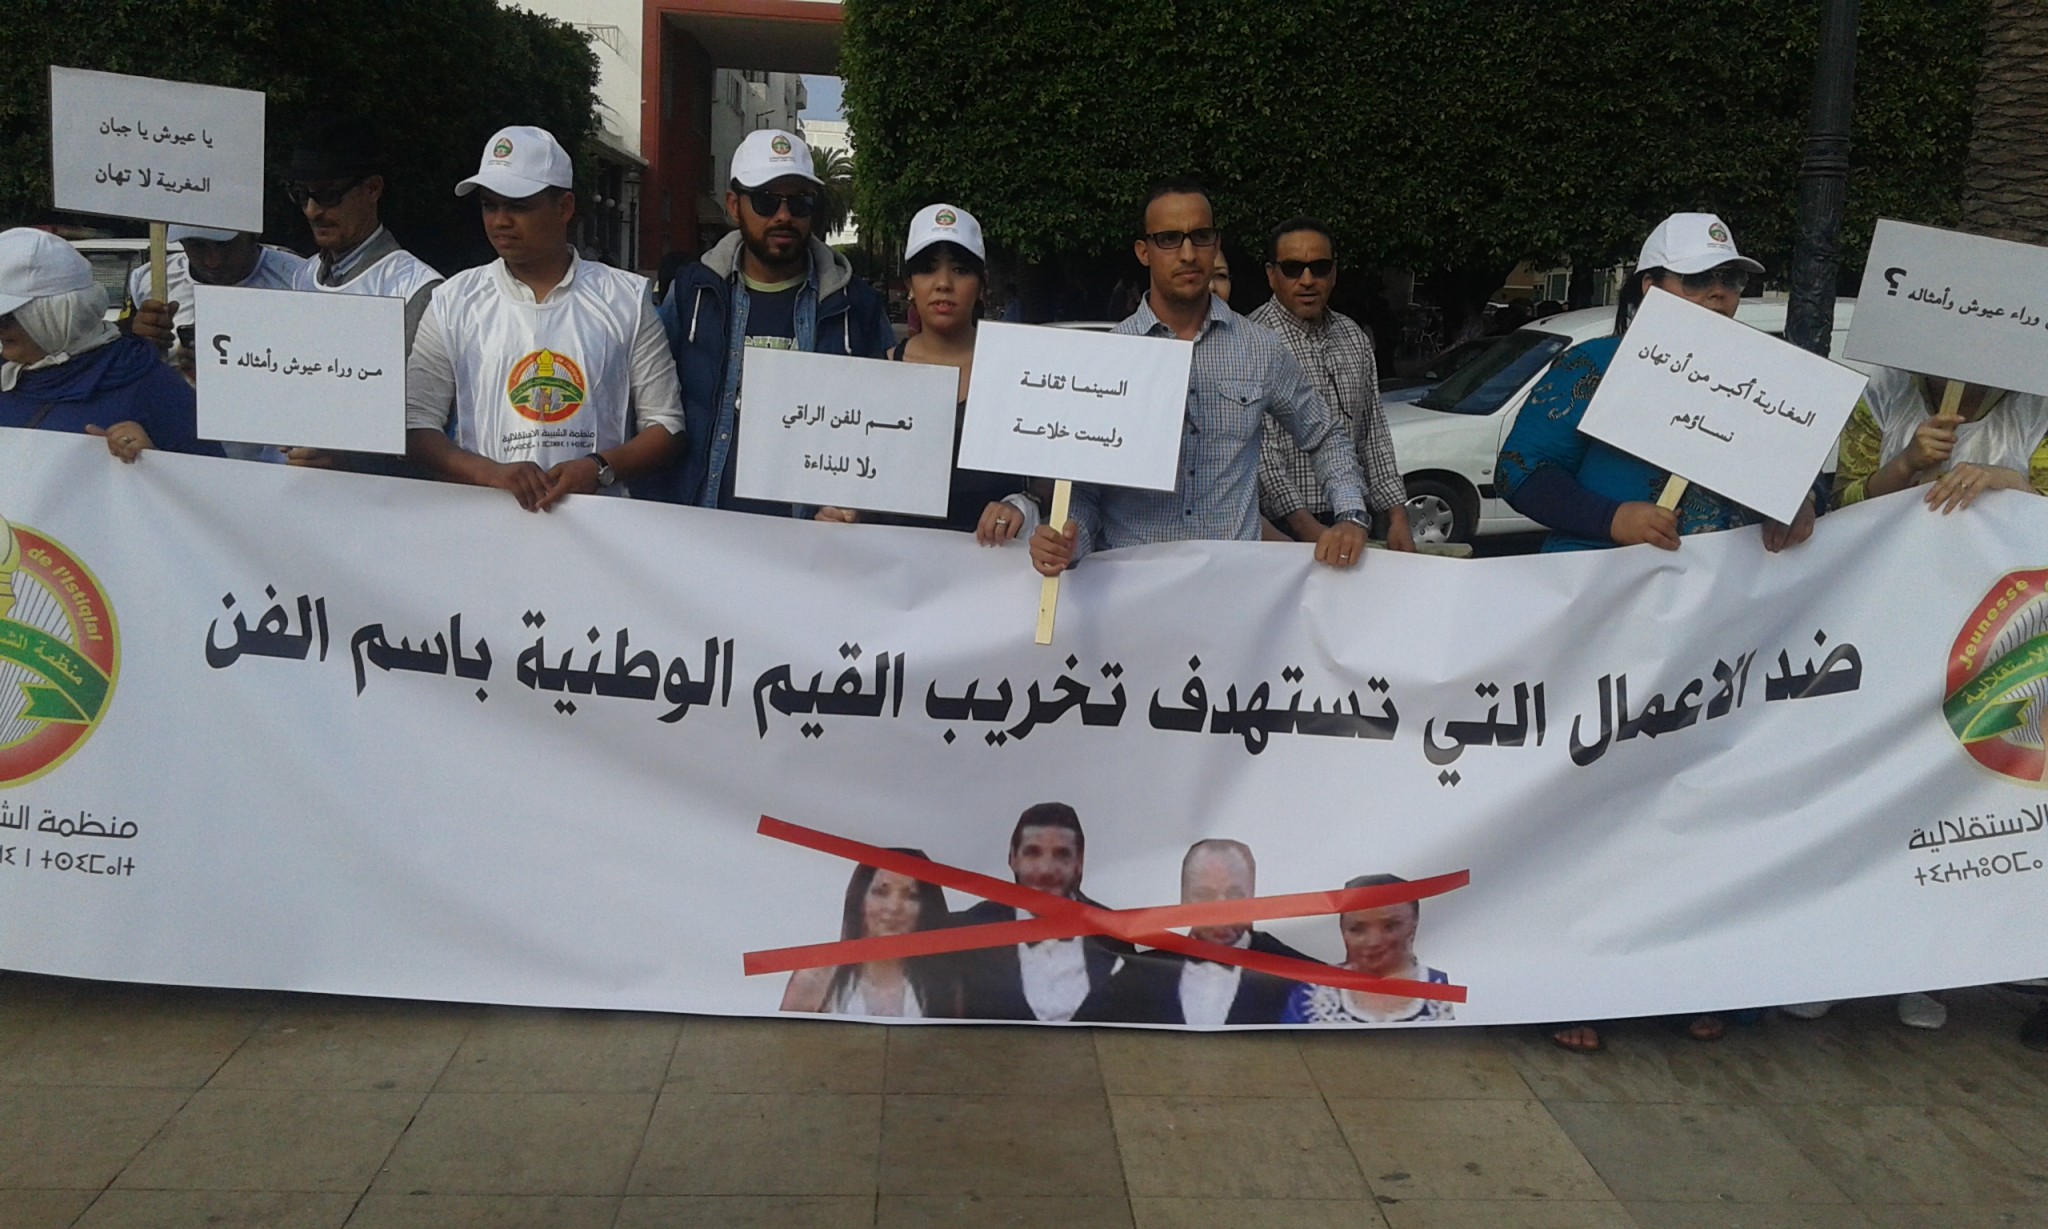 الشببية الاستقلالية تحتج أمام البرلمان المغربي و تطالب منع فيلم عيوش